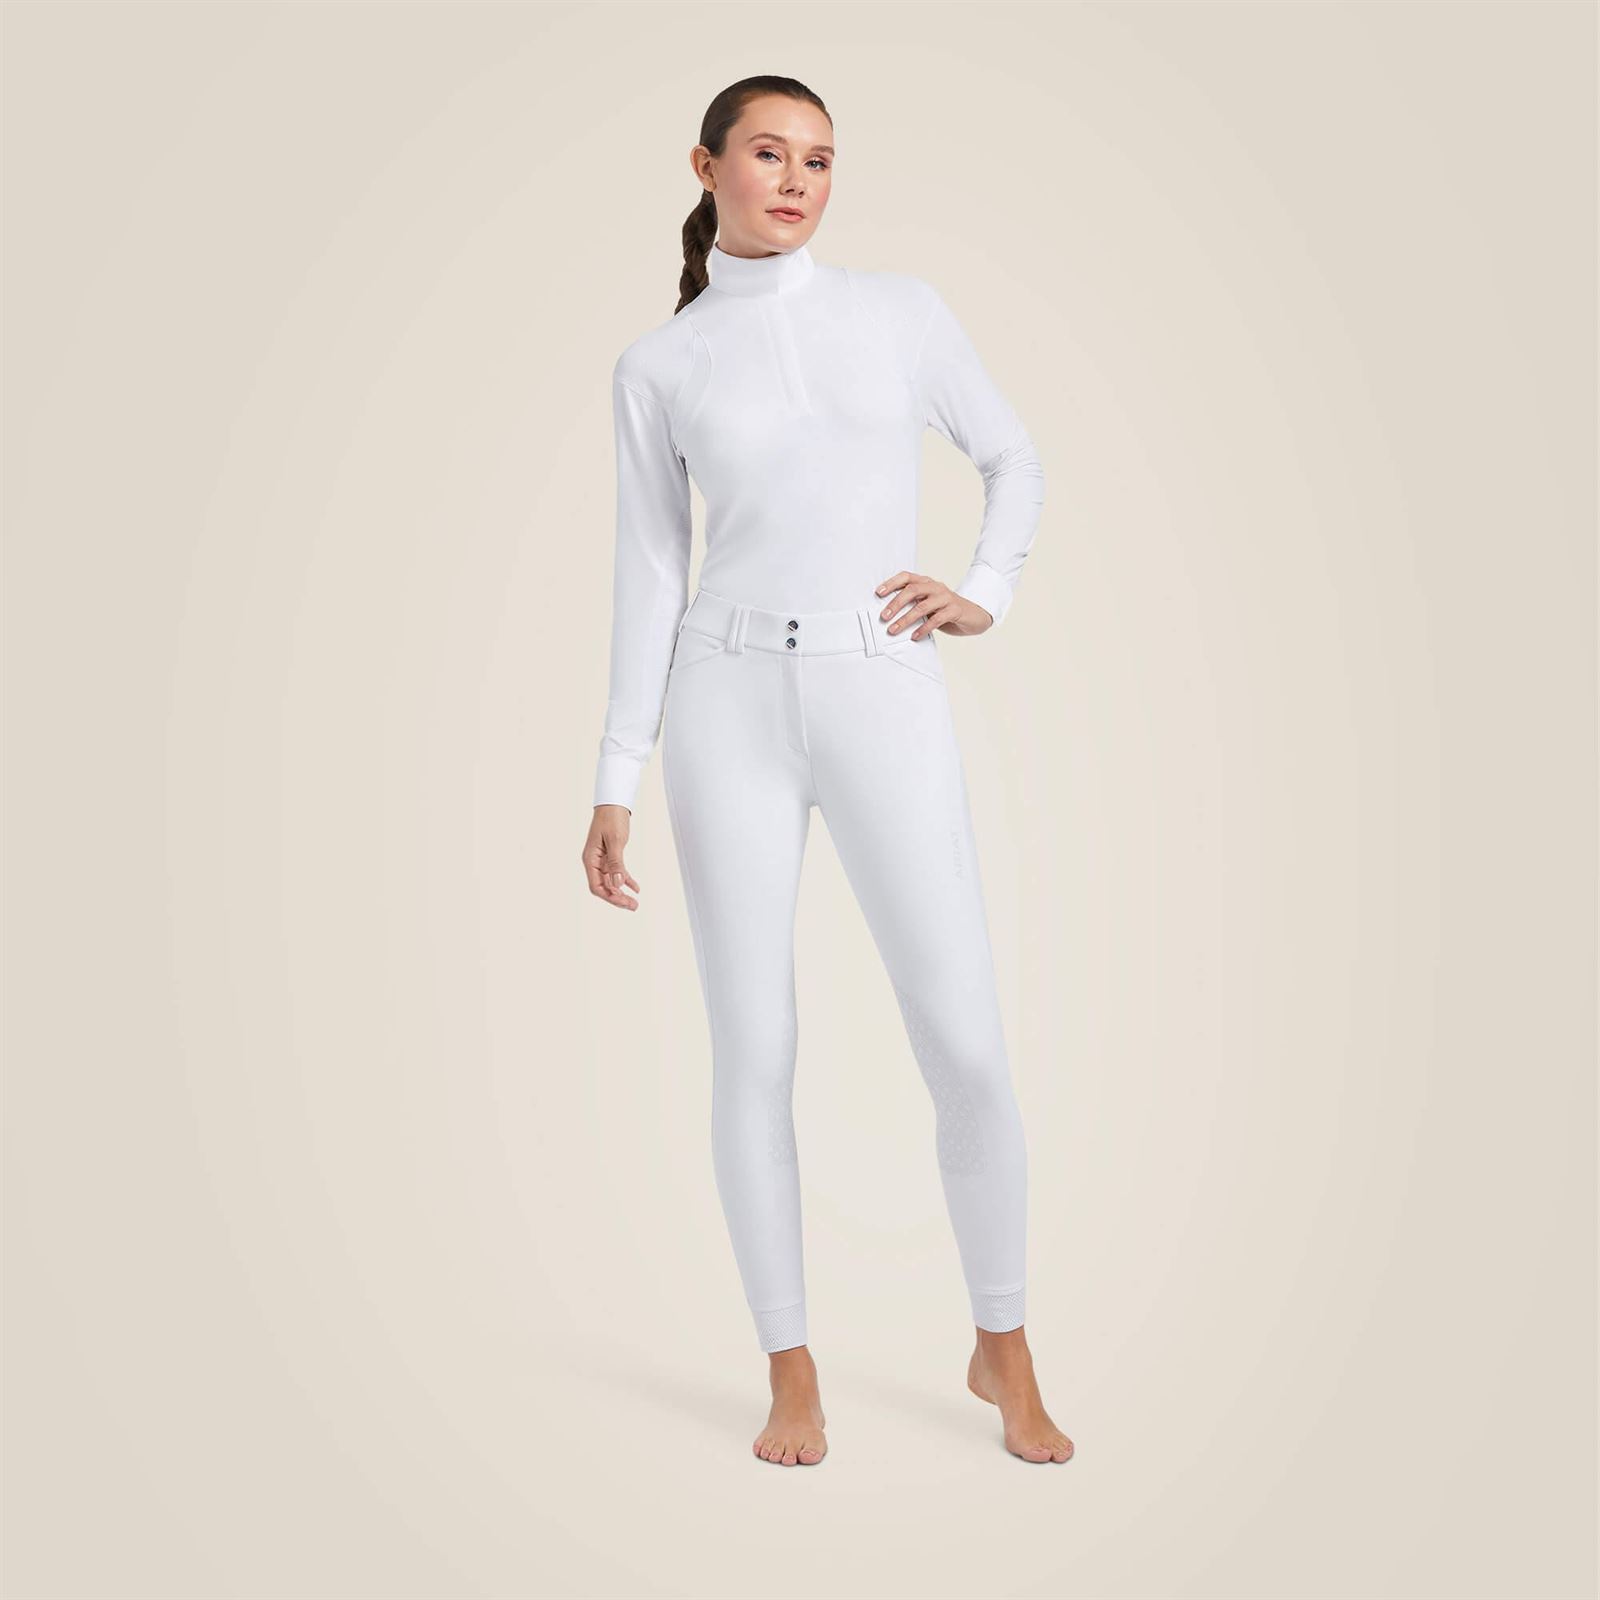 Pantalón mujer ARIAT TRI FACTOR grip rodilla color blanco - Imagen 3